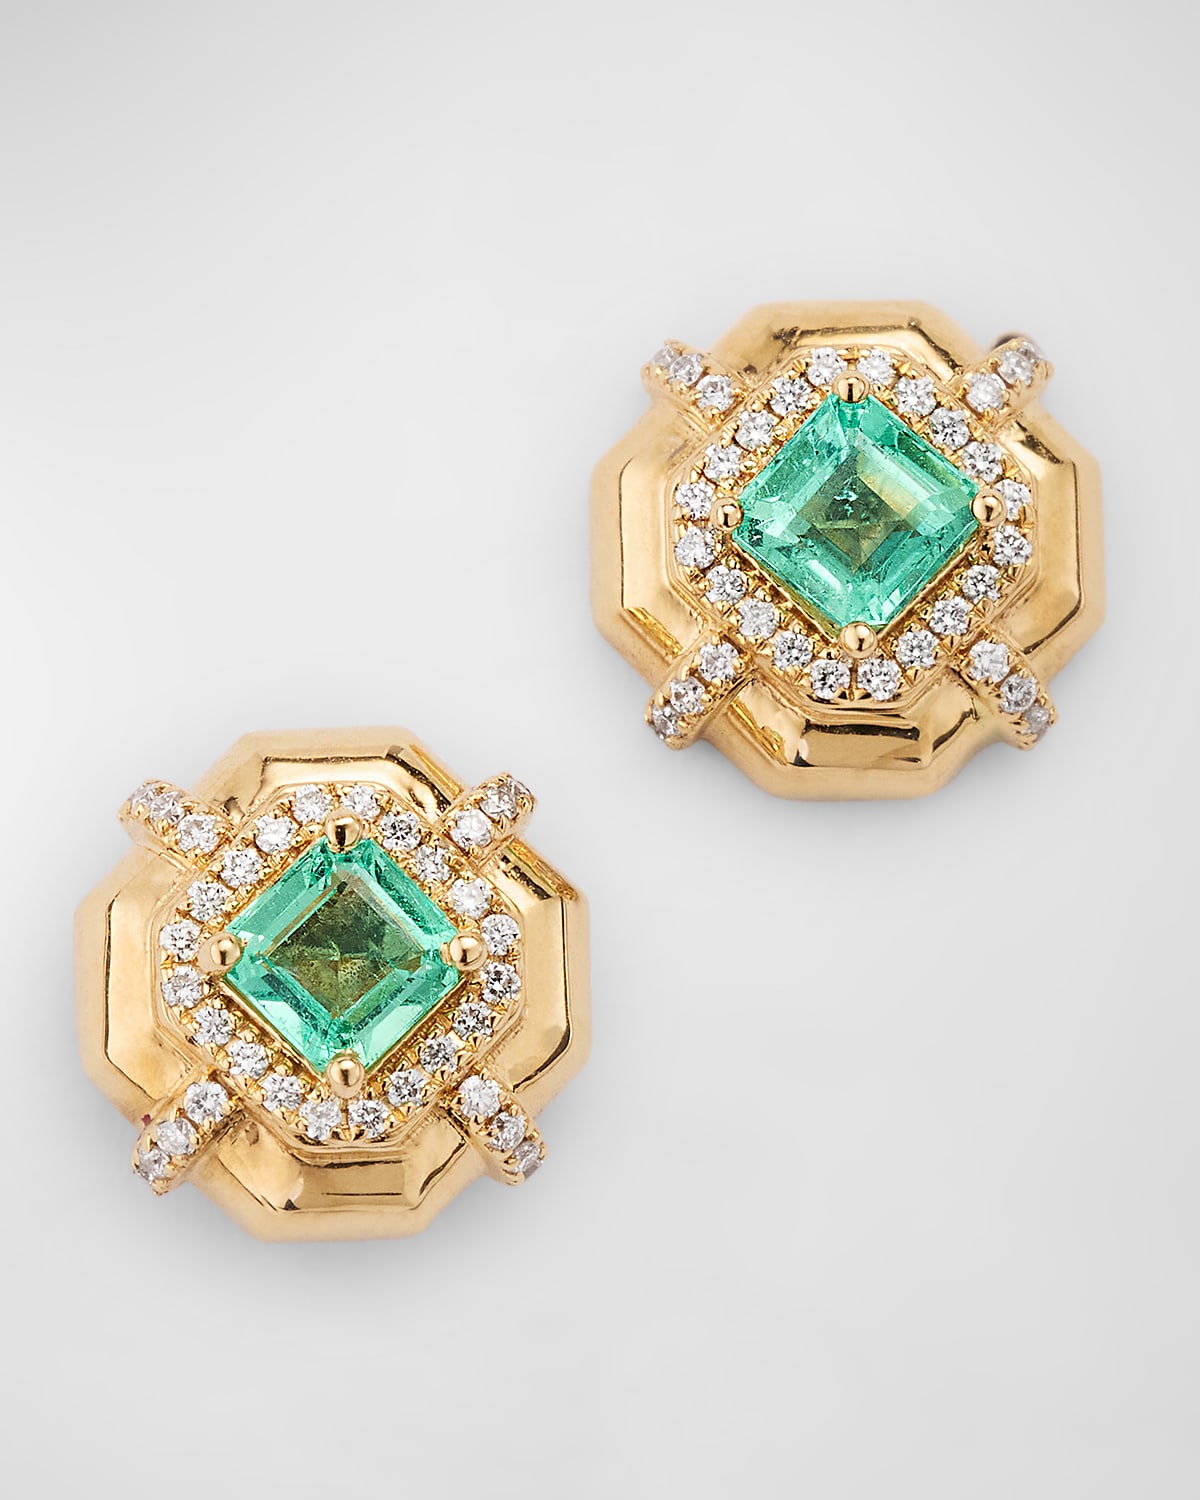 G-Classics' 4mm Asscher Cut Emerald Earrings with Diamonds In 18K Yellow Gold